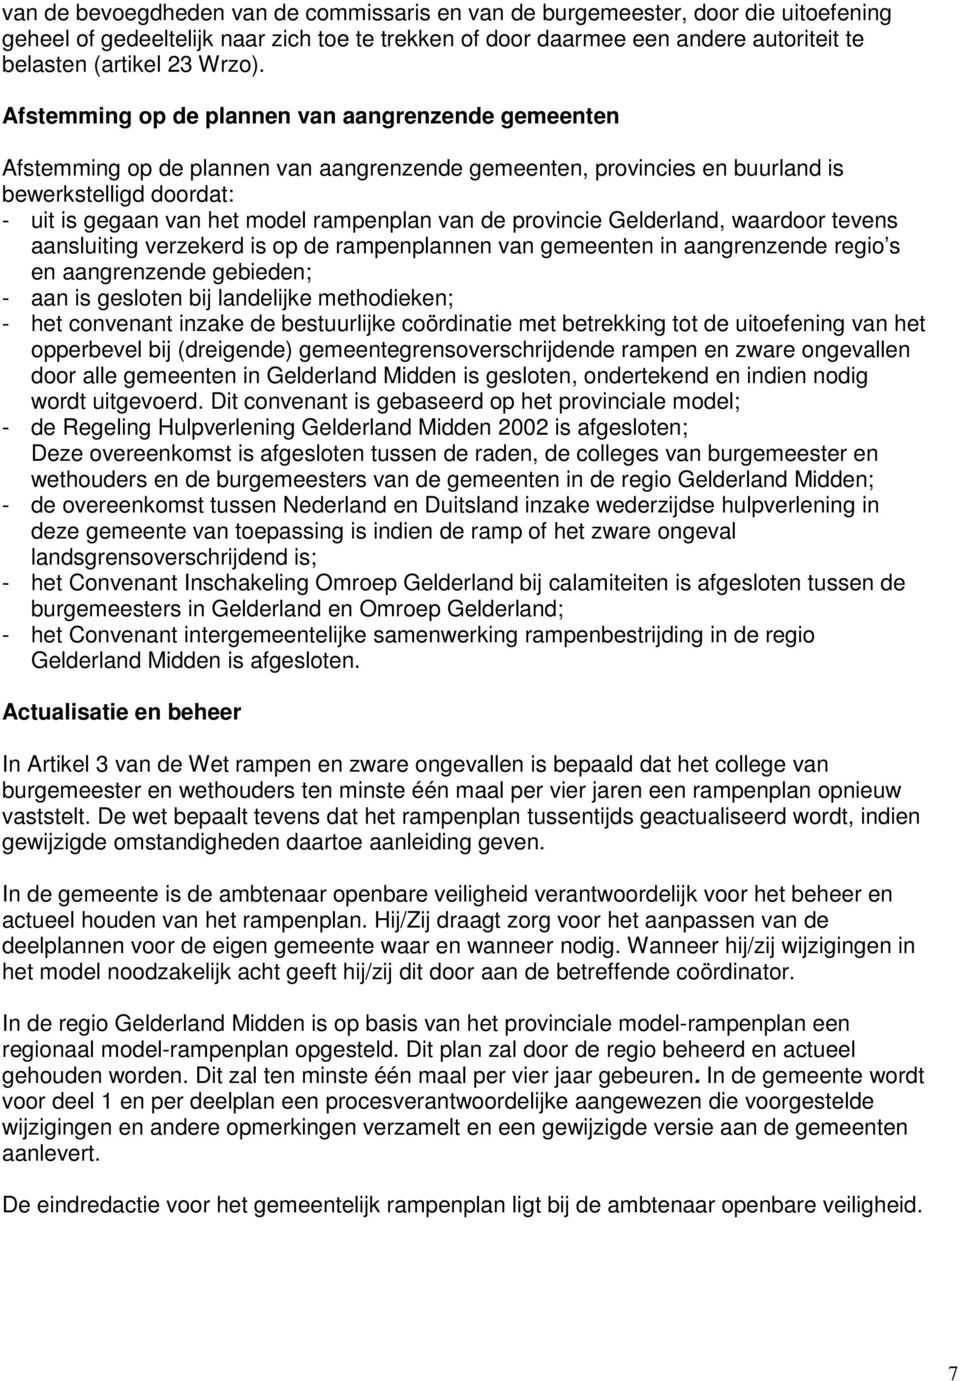 de provincie Gelderland, waardoor tevens aansluiting verzekerd is op de rampenplannen van gemeenten in aangrenzende regio s en aangrenzende gebieden; - aan is gesloten bij landelijke methodieken; -